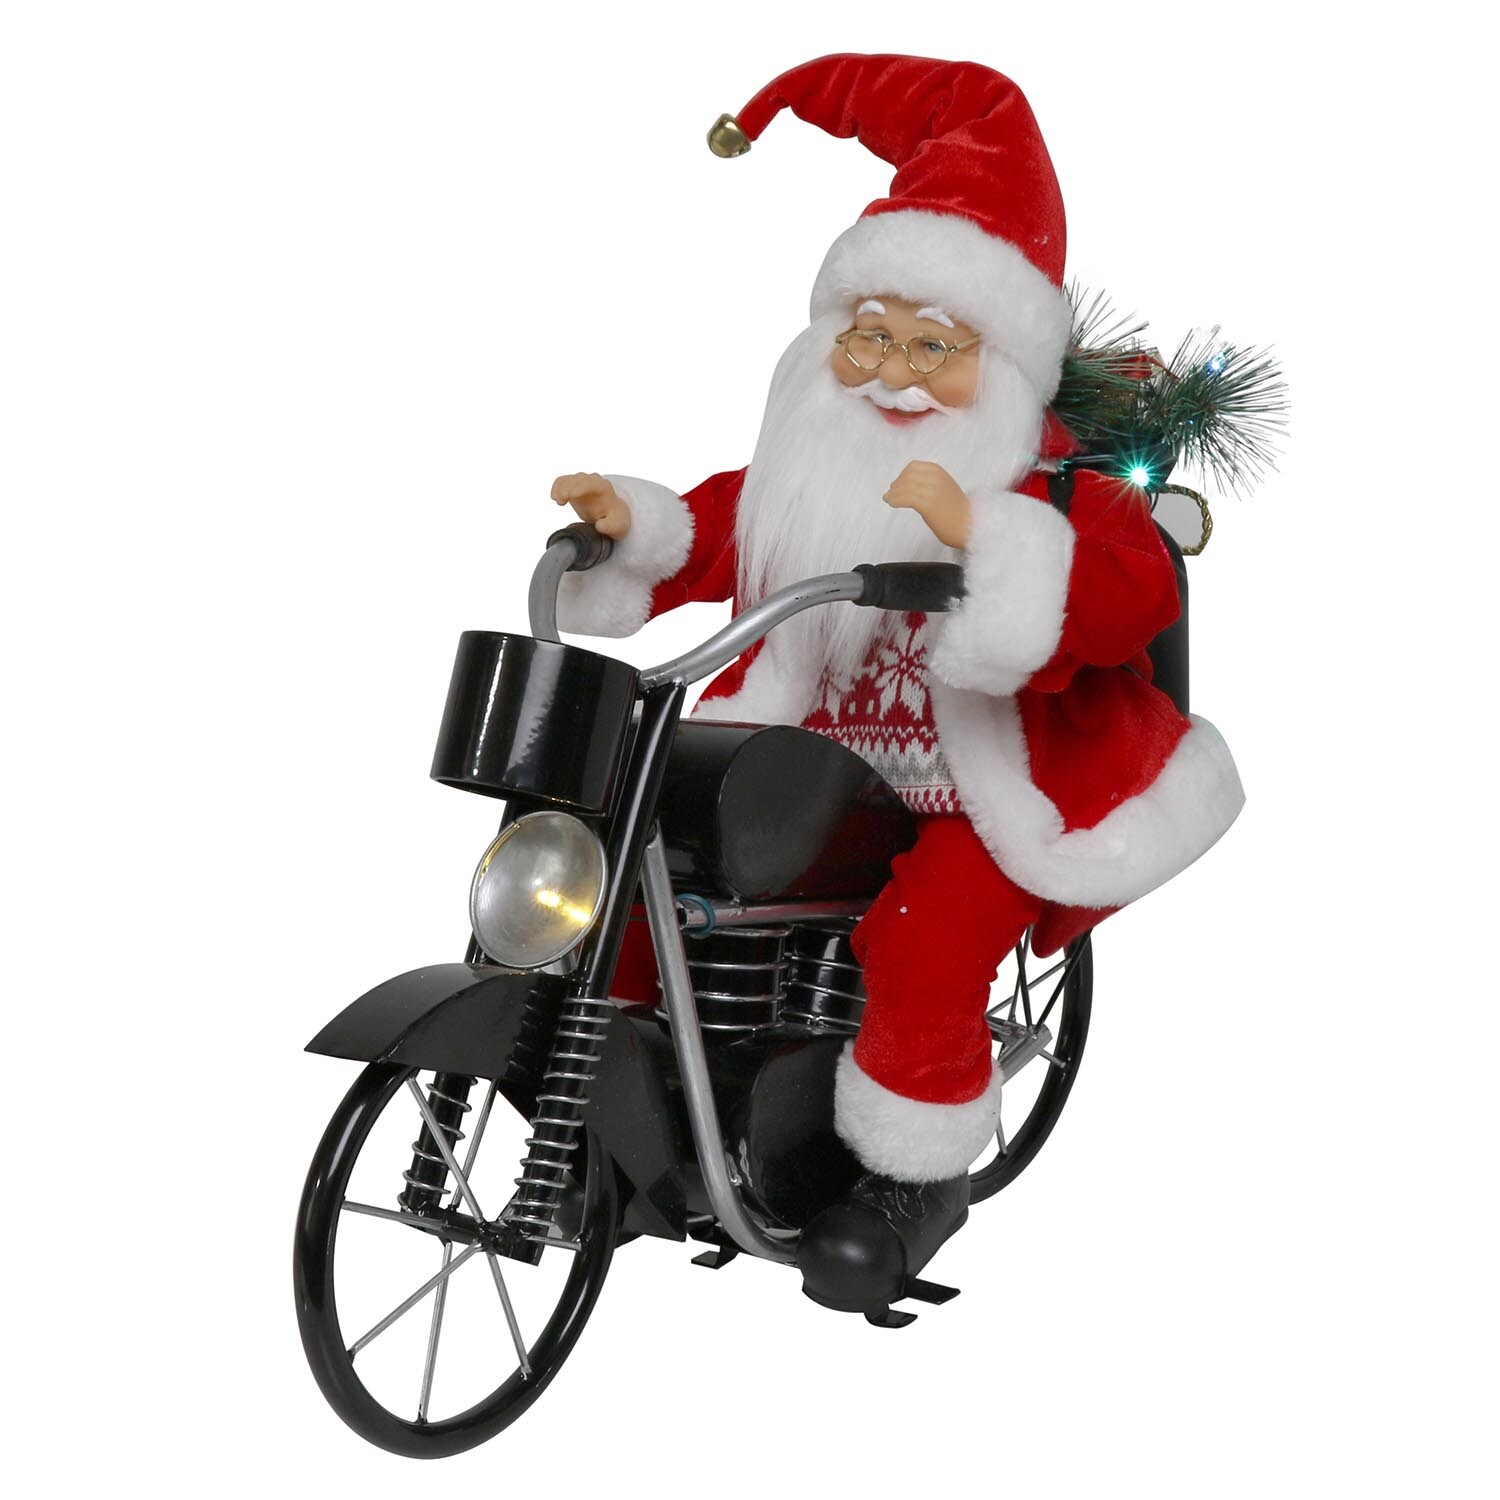 Musical Santa Riding Motorbike - Red Image 2